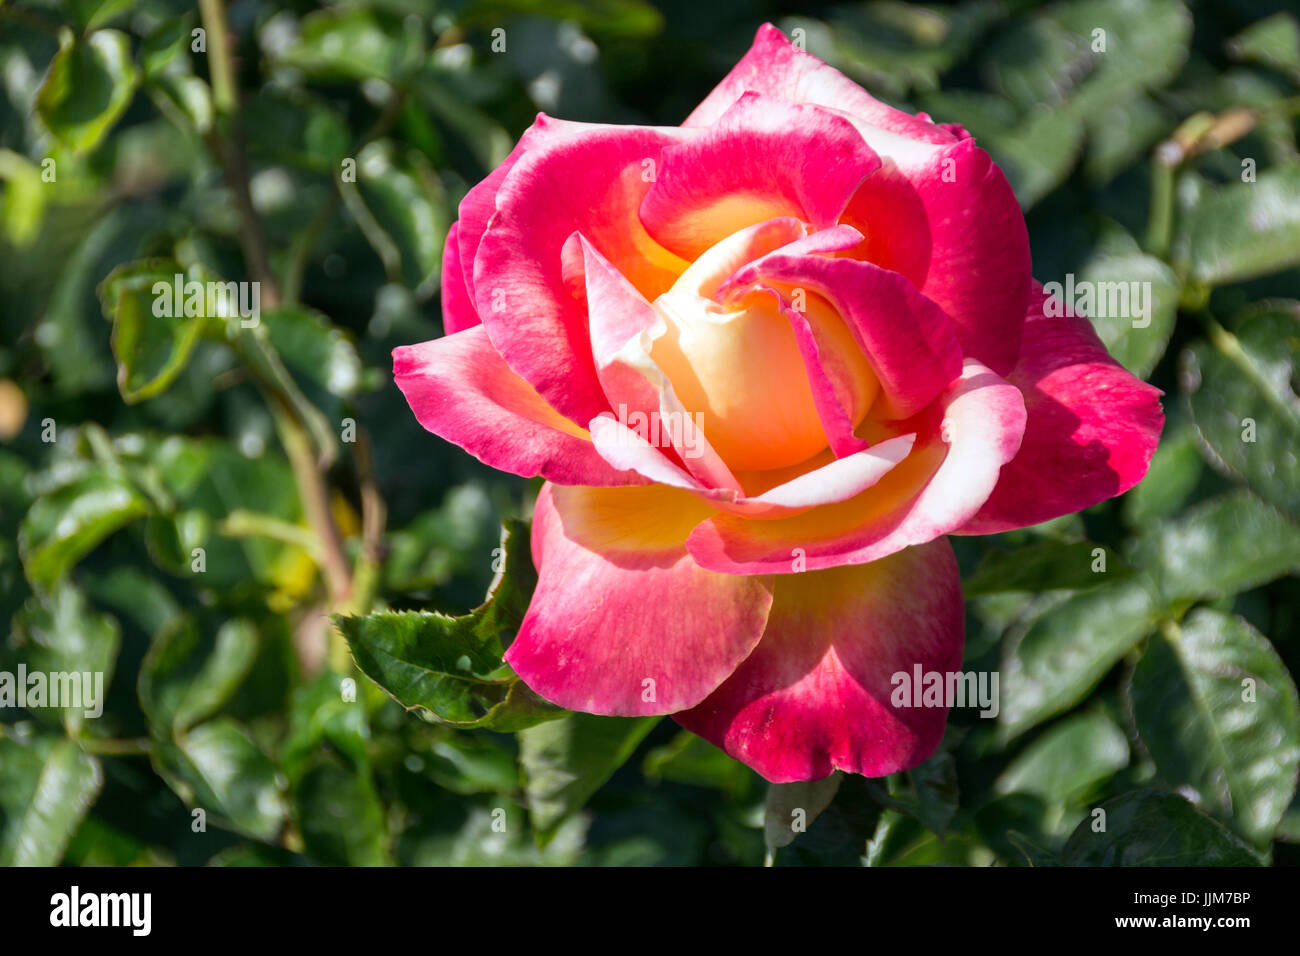 Flores del Parque de las Rosas en Los Angeles california, captadas bajo el fuerte calor de una tarde de verano, sus delicados petalos resisten al sol Stock Photo